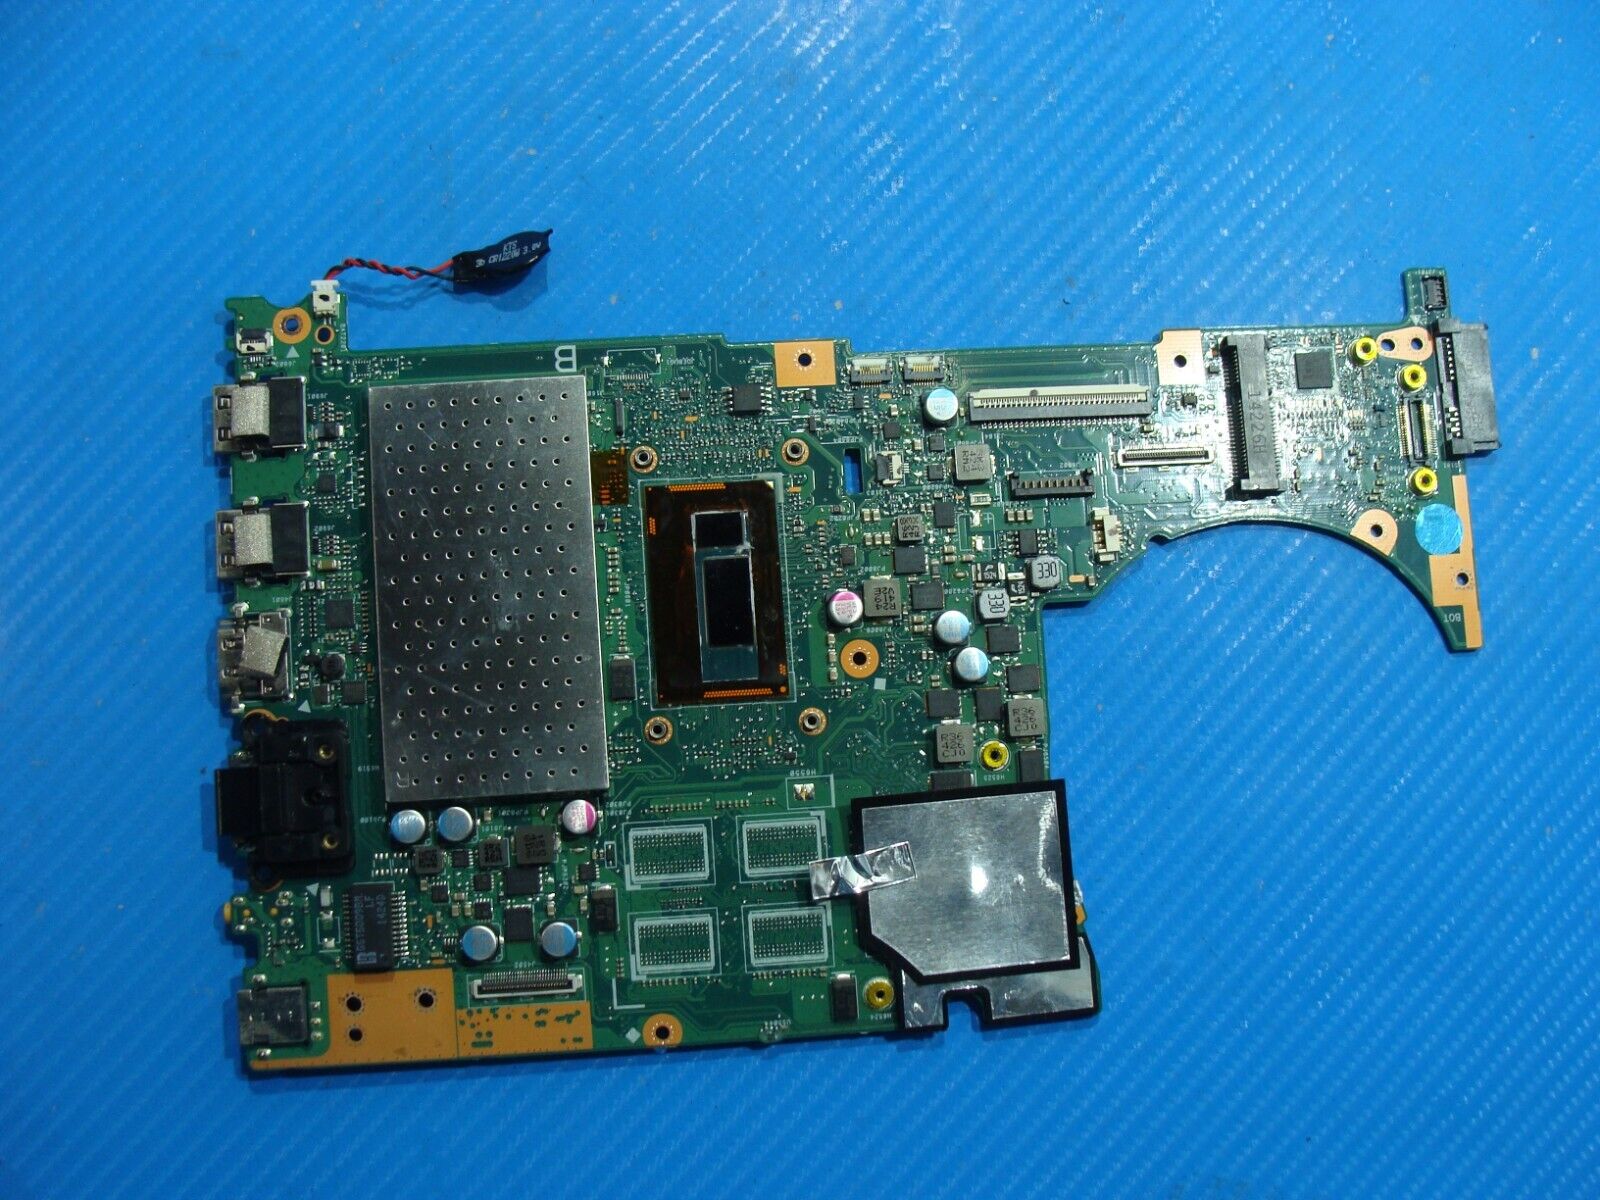 Asus 15.6” Q551LN-BBI706 OEM i7-4510U 2.0GHz Nvidia 840M 2GB Motherboard Q551LN